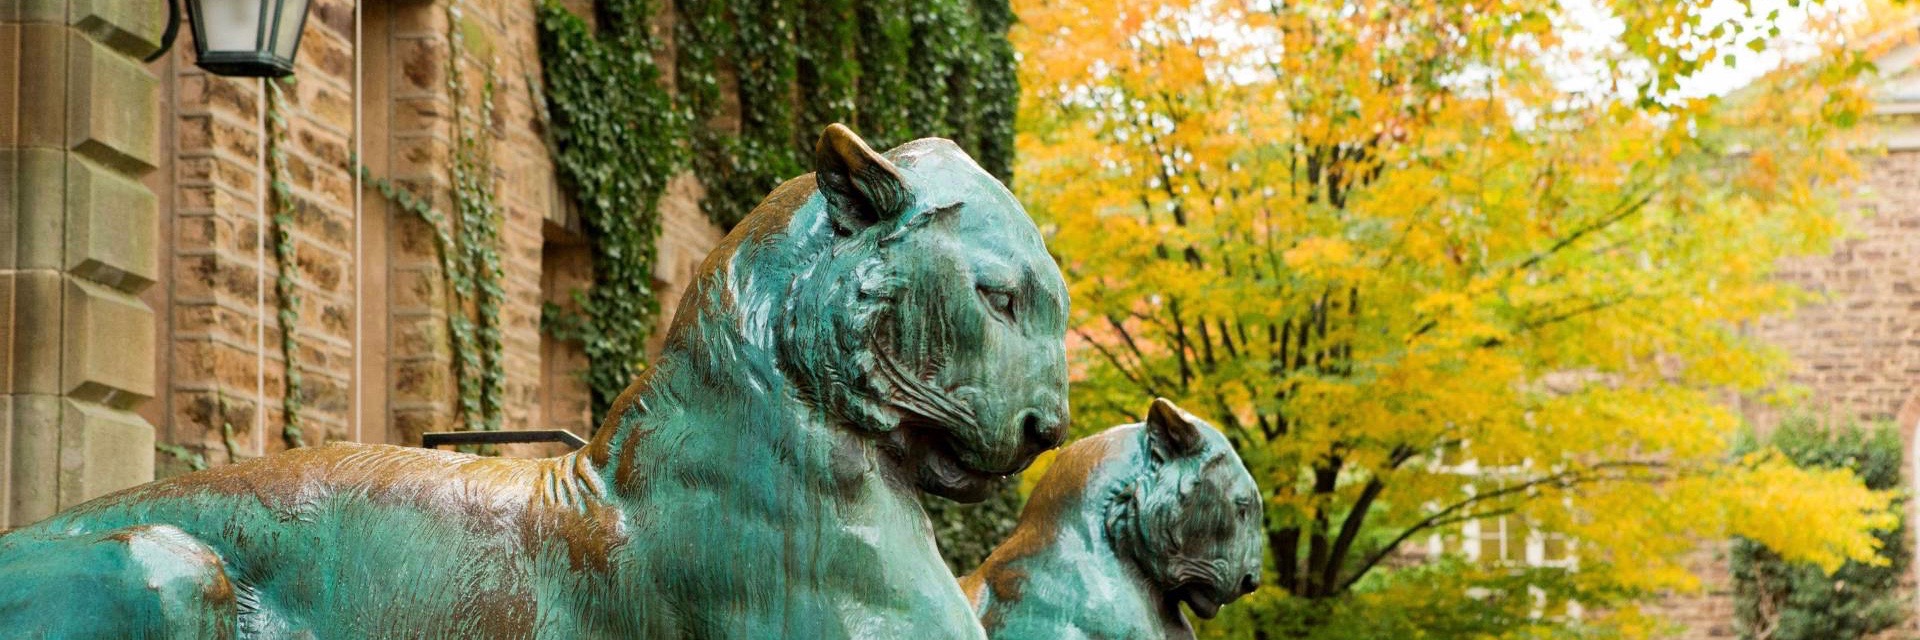 bronze tiger statues